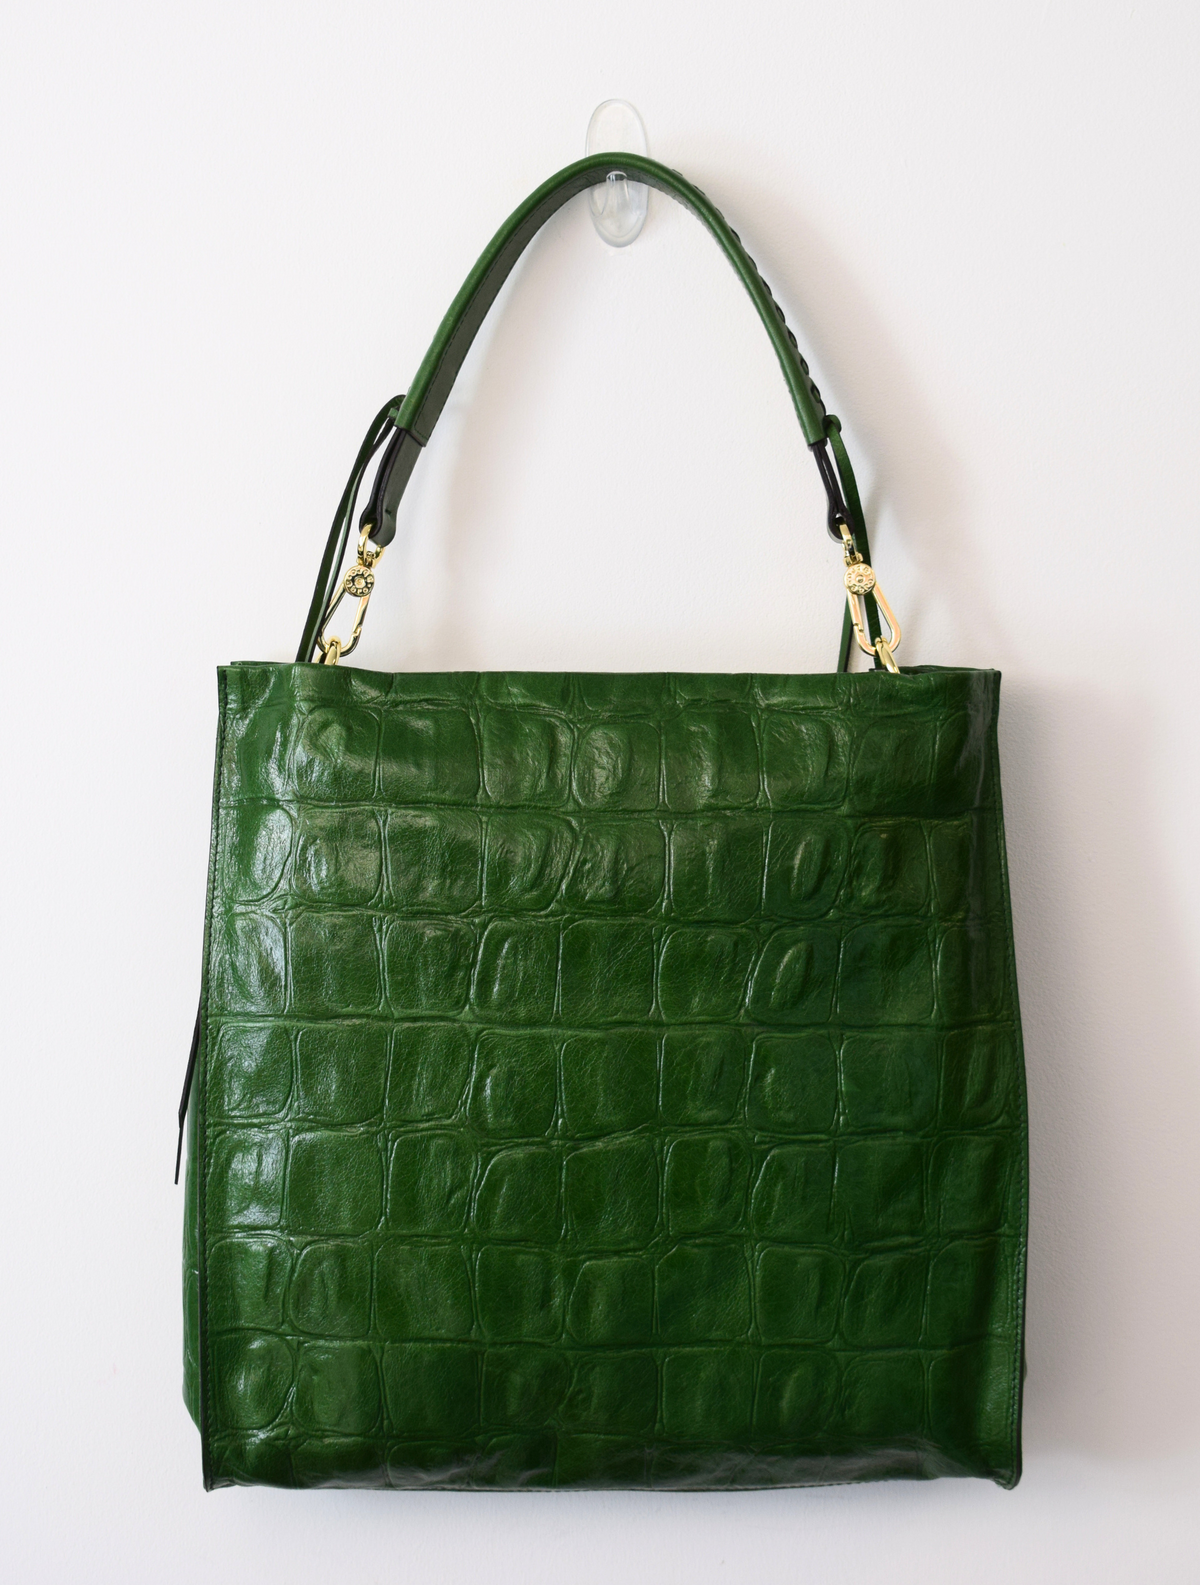 Green mock croc bag